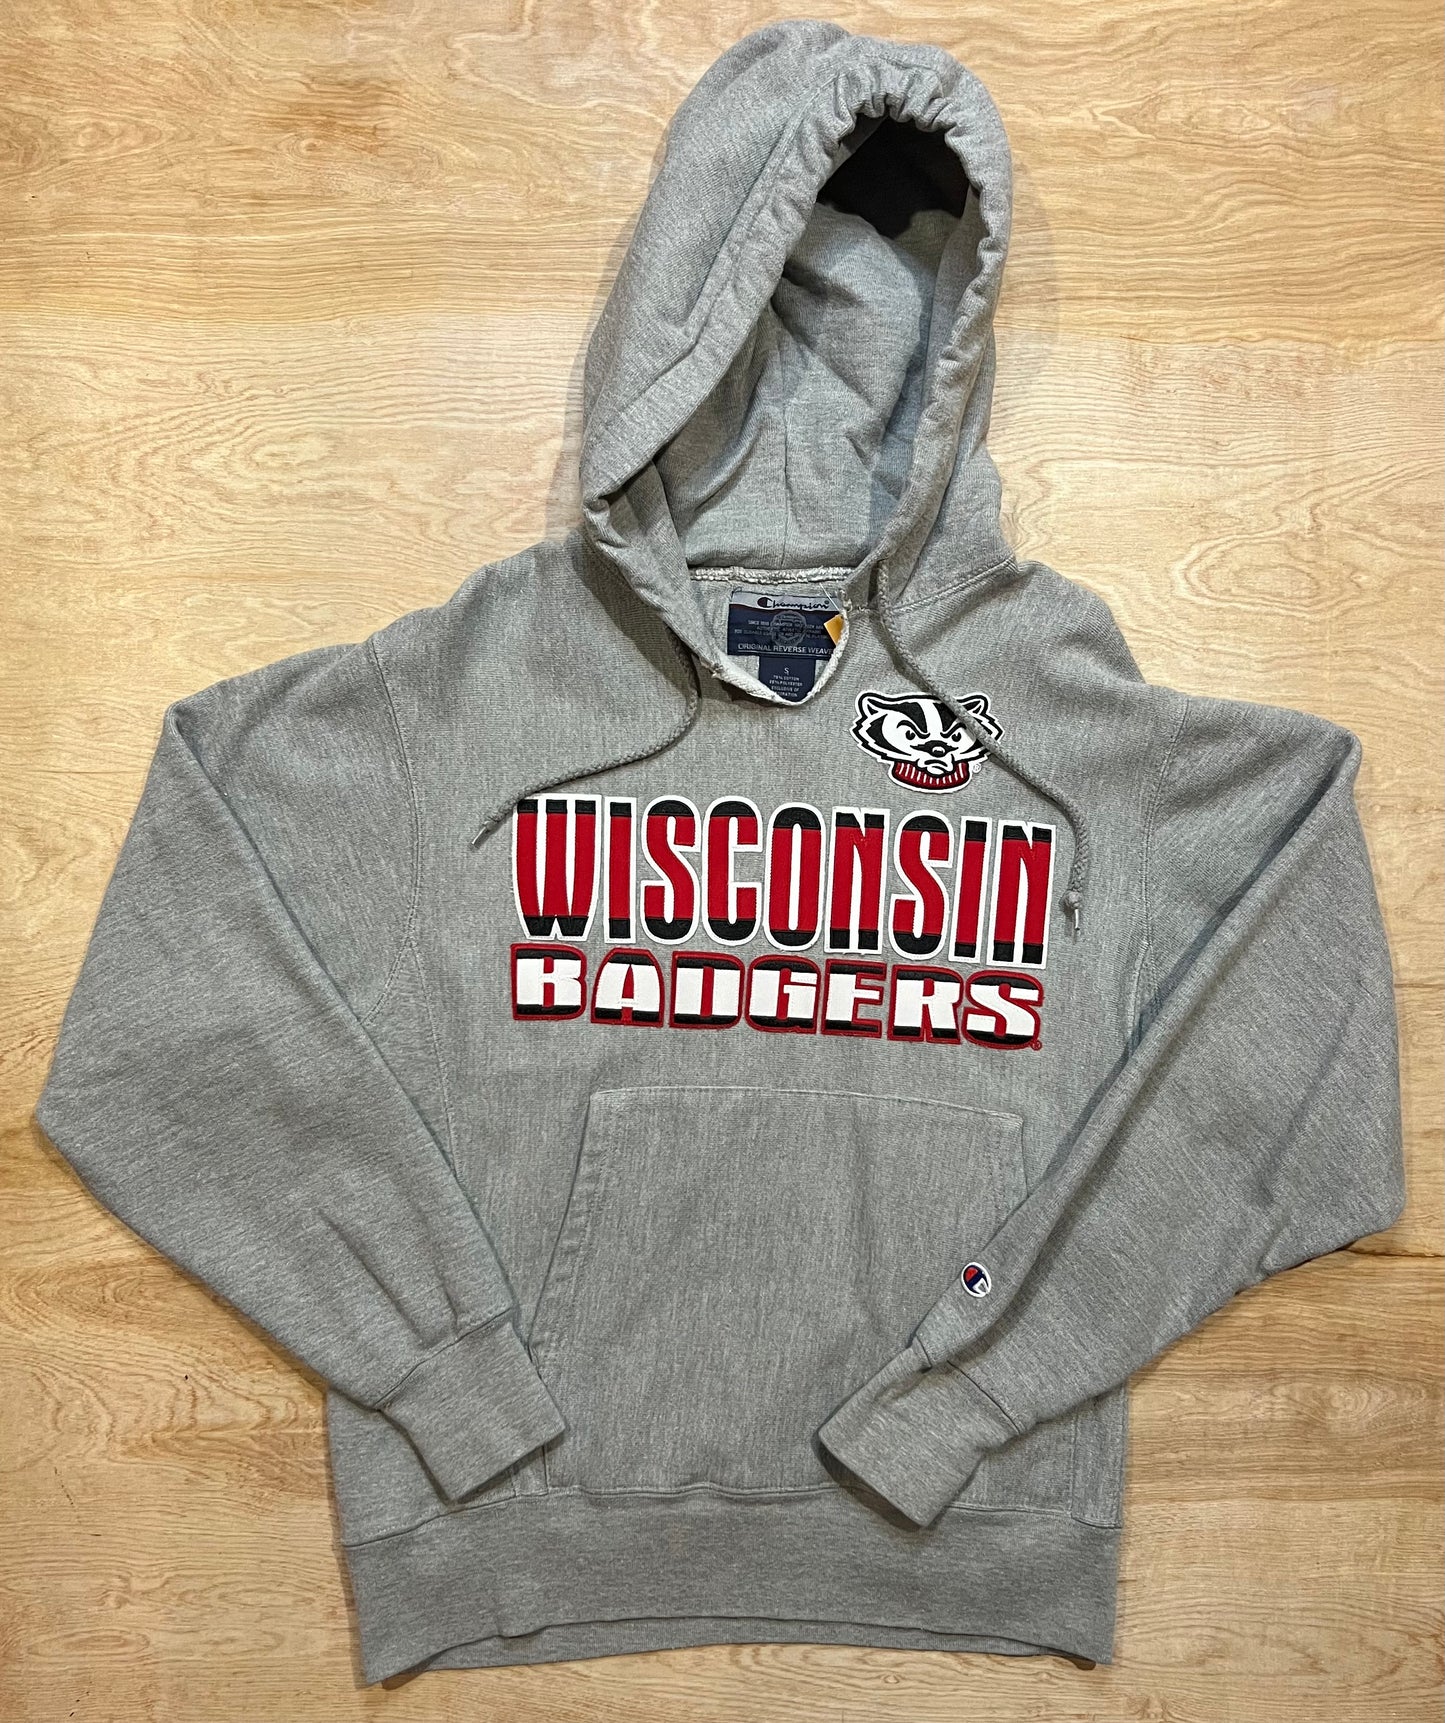 Vintage University of Wisconsin Badgers Champion Reverse Weave Hoodie